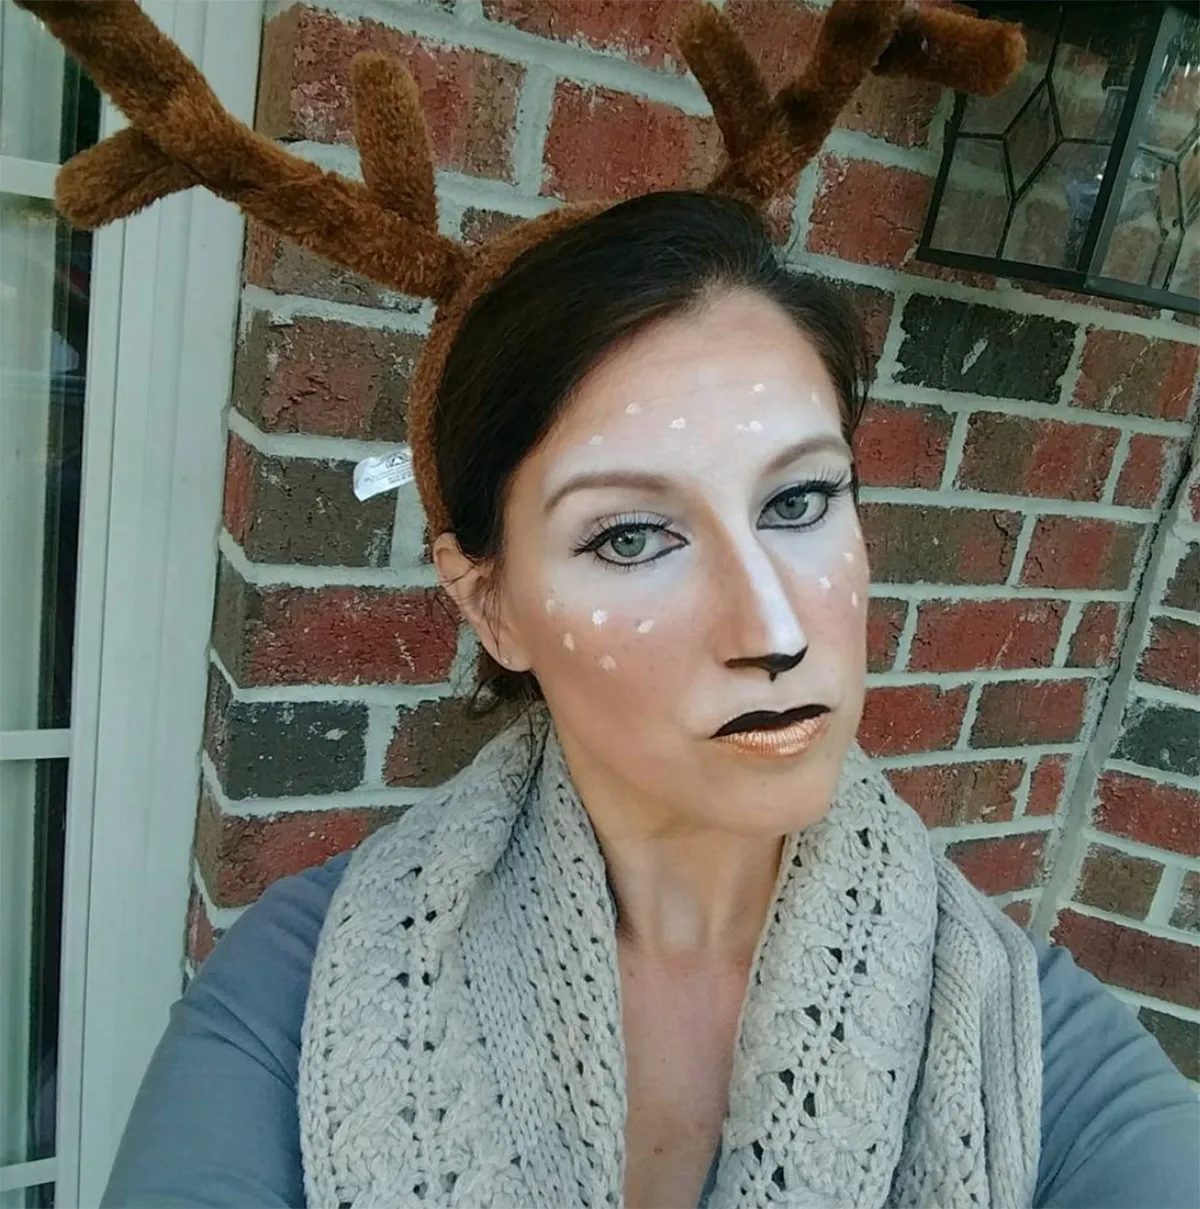 Deer face paint